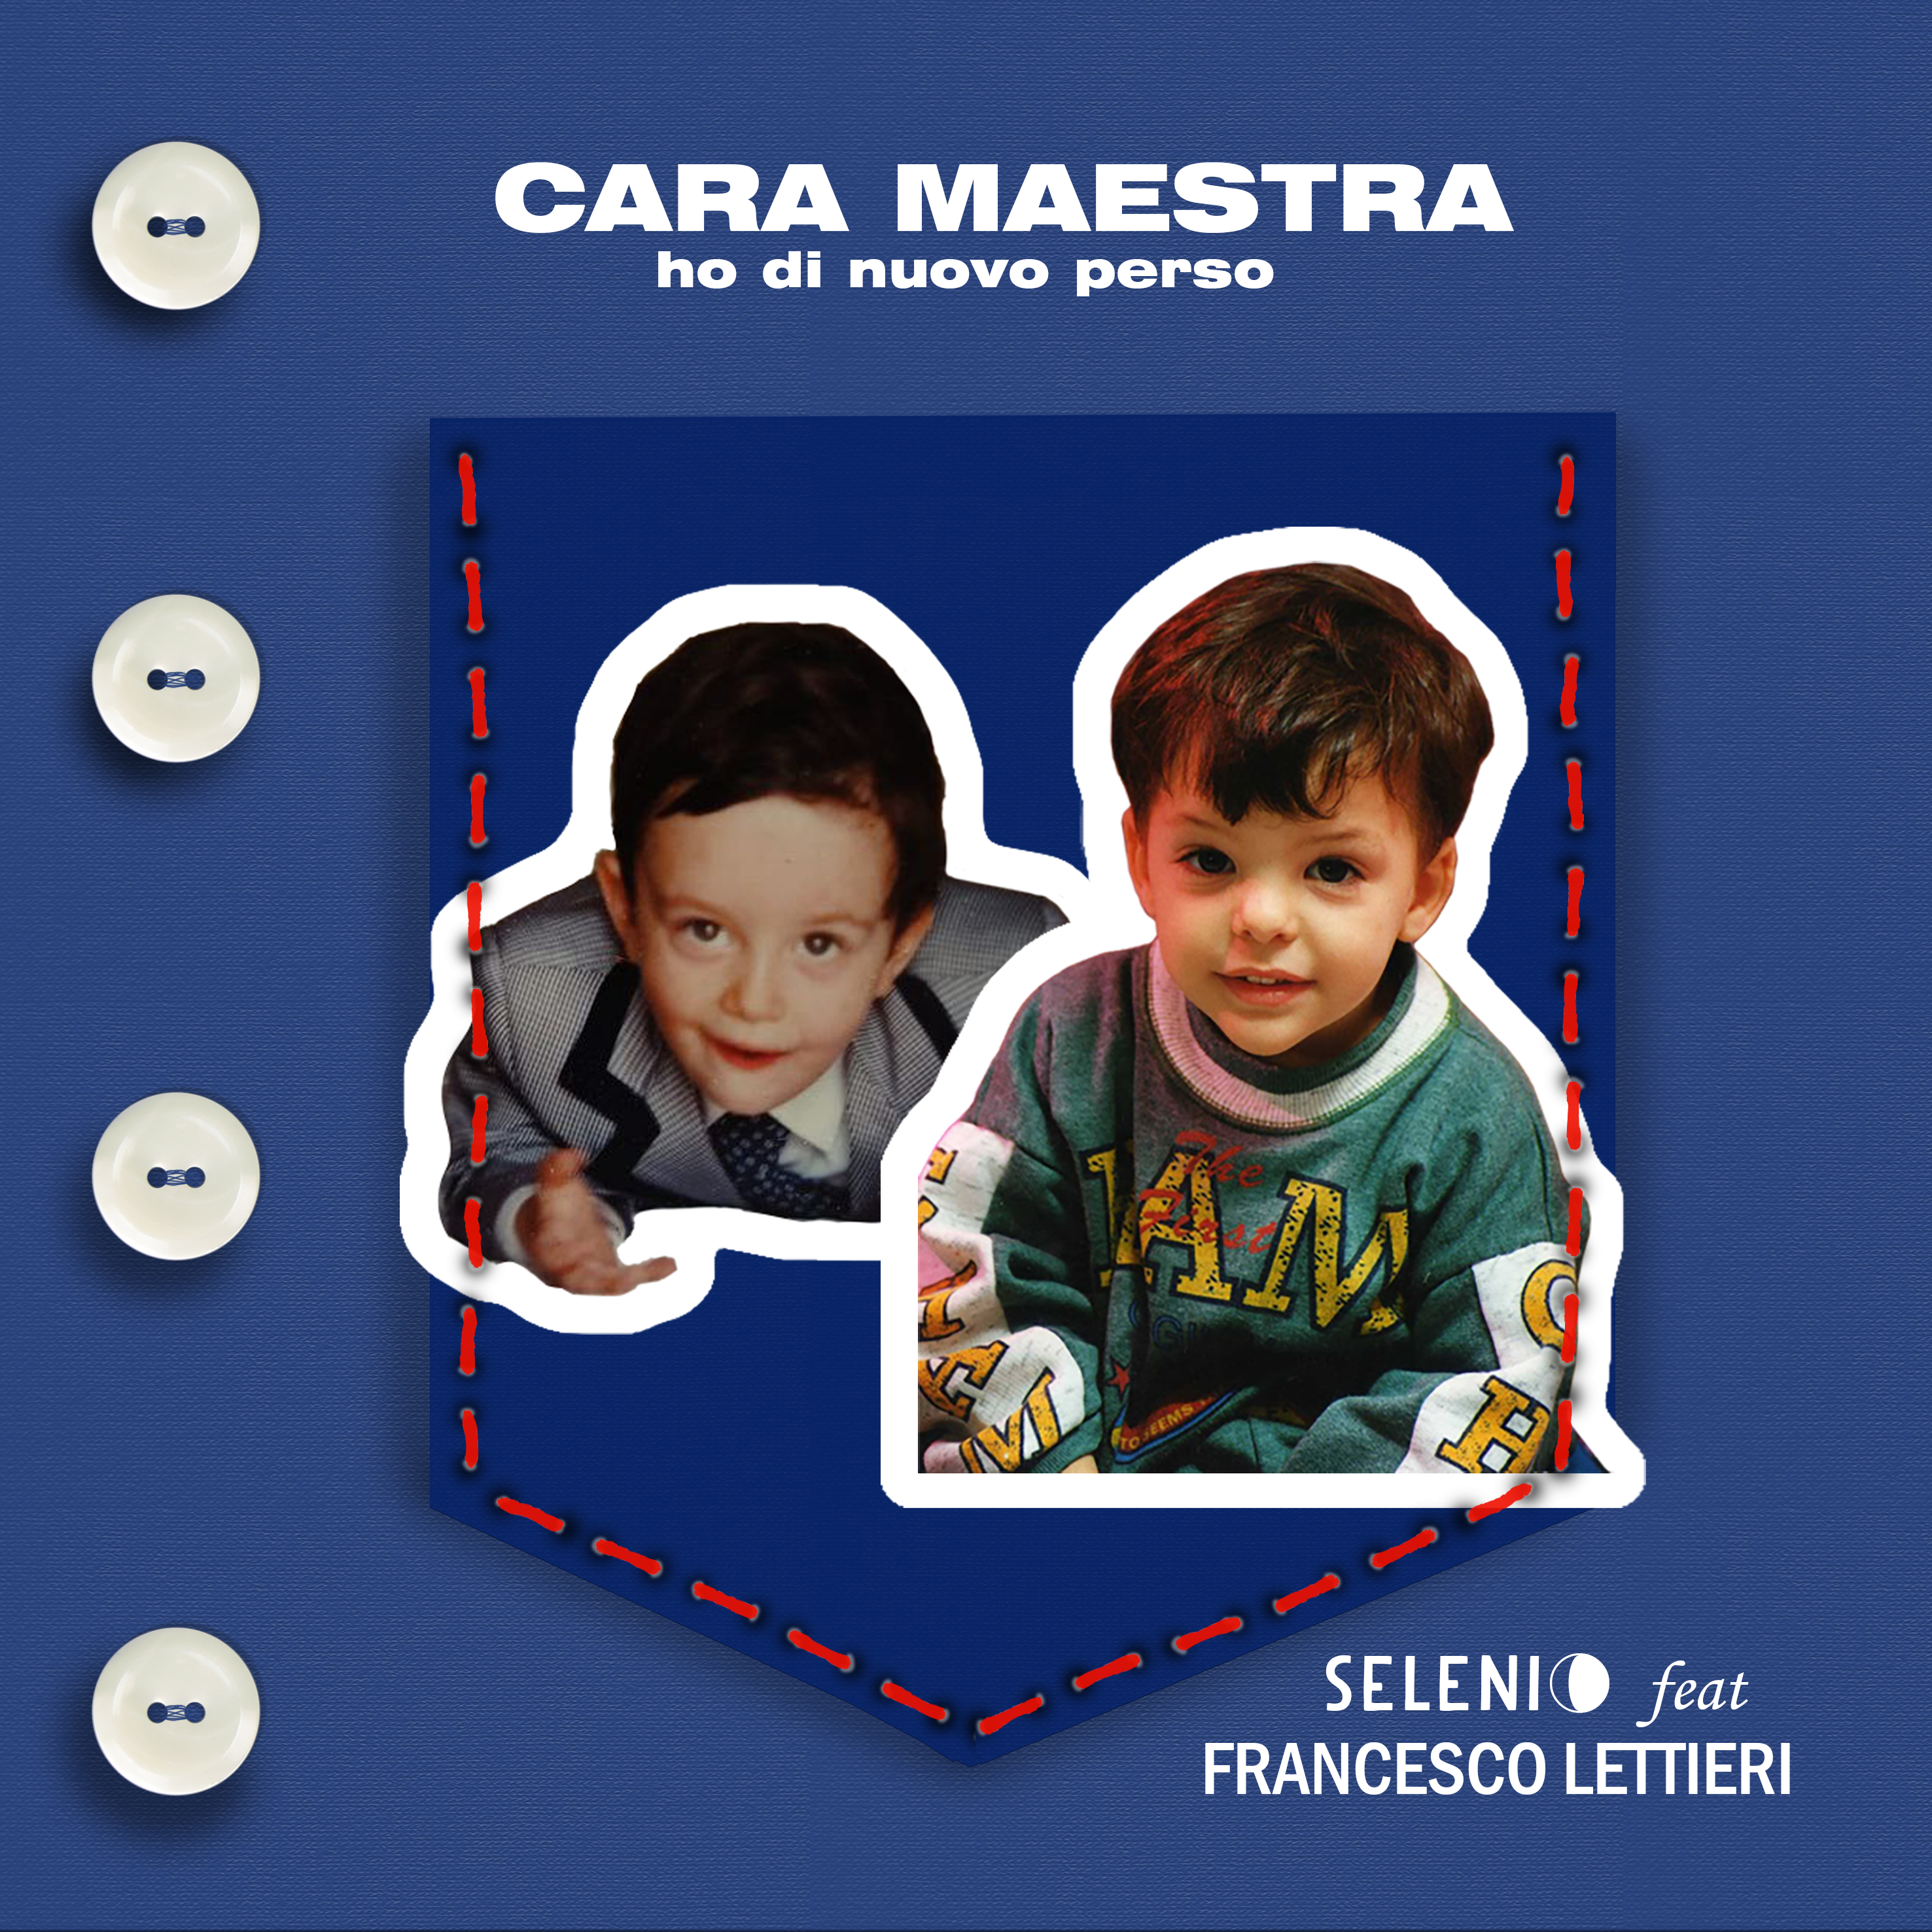 “Cara Maestra ho di nuovo perso” il singolo di Selenio feat. Francesco Lettieri